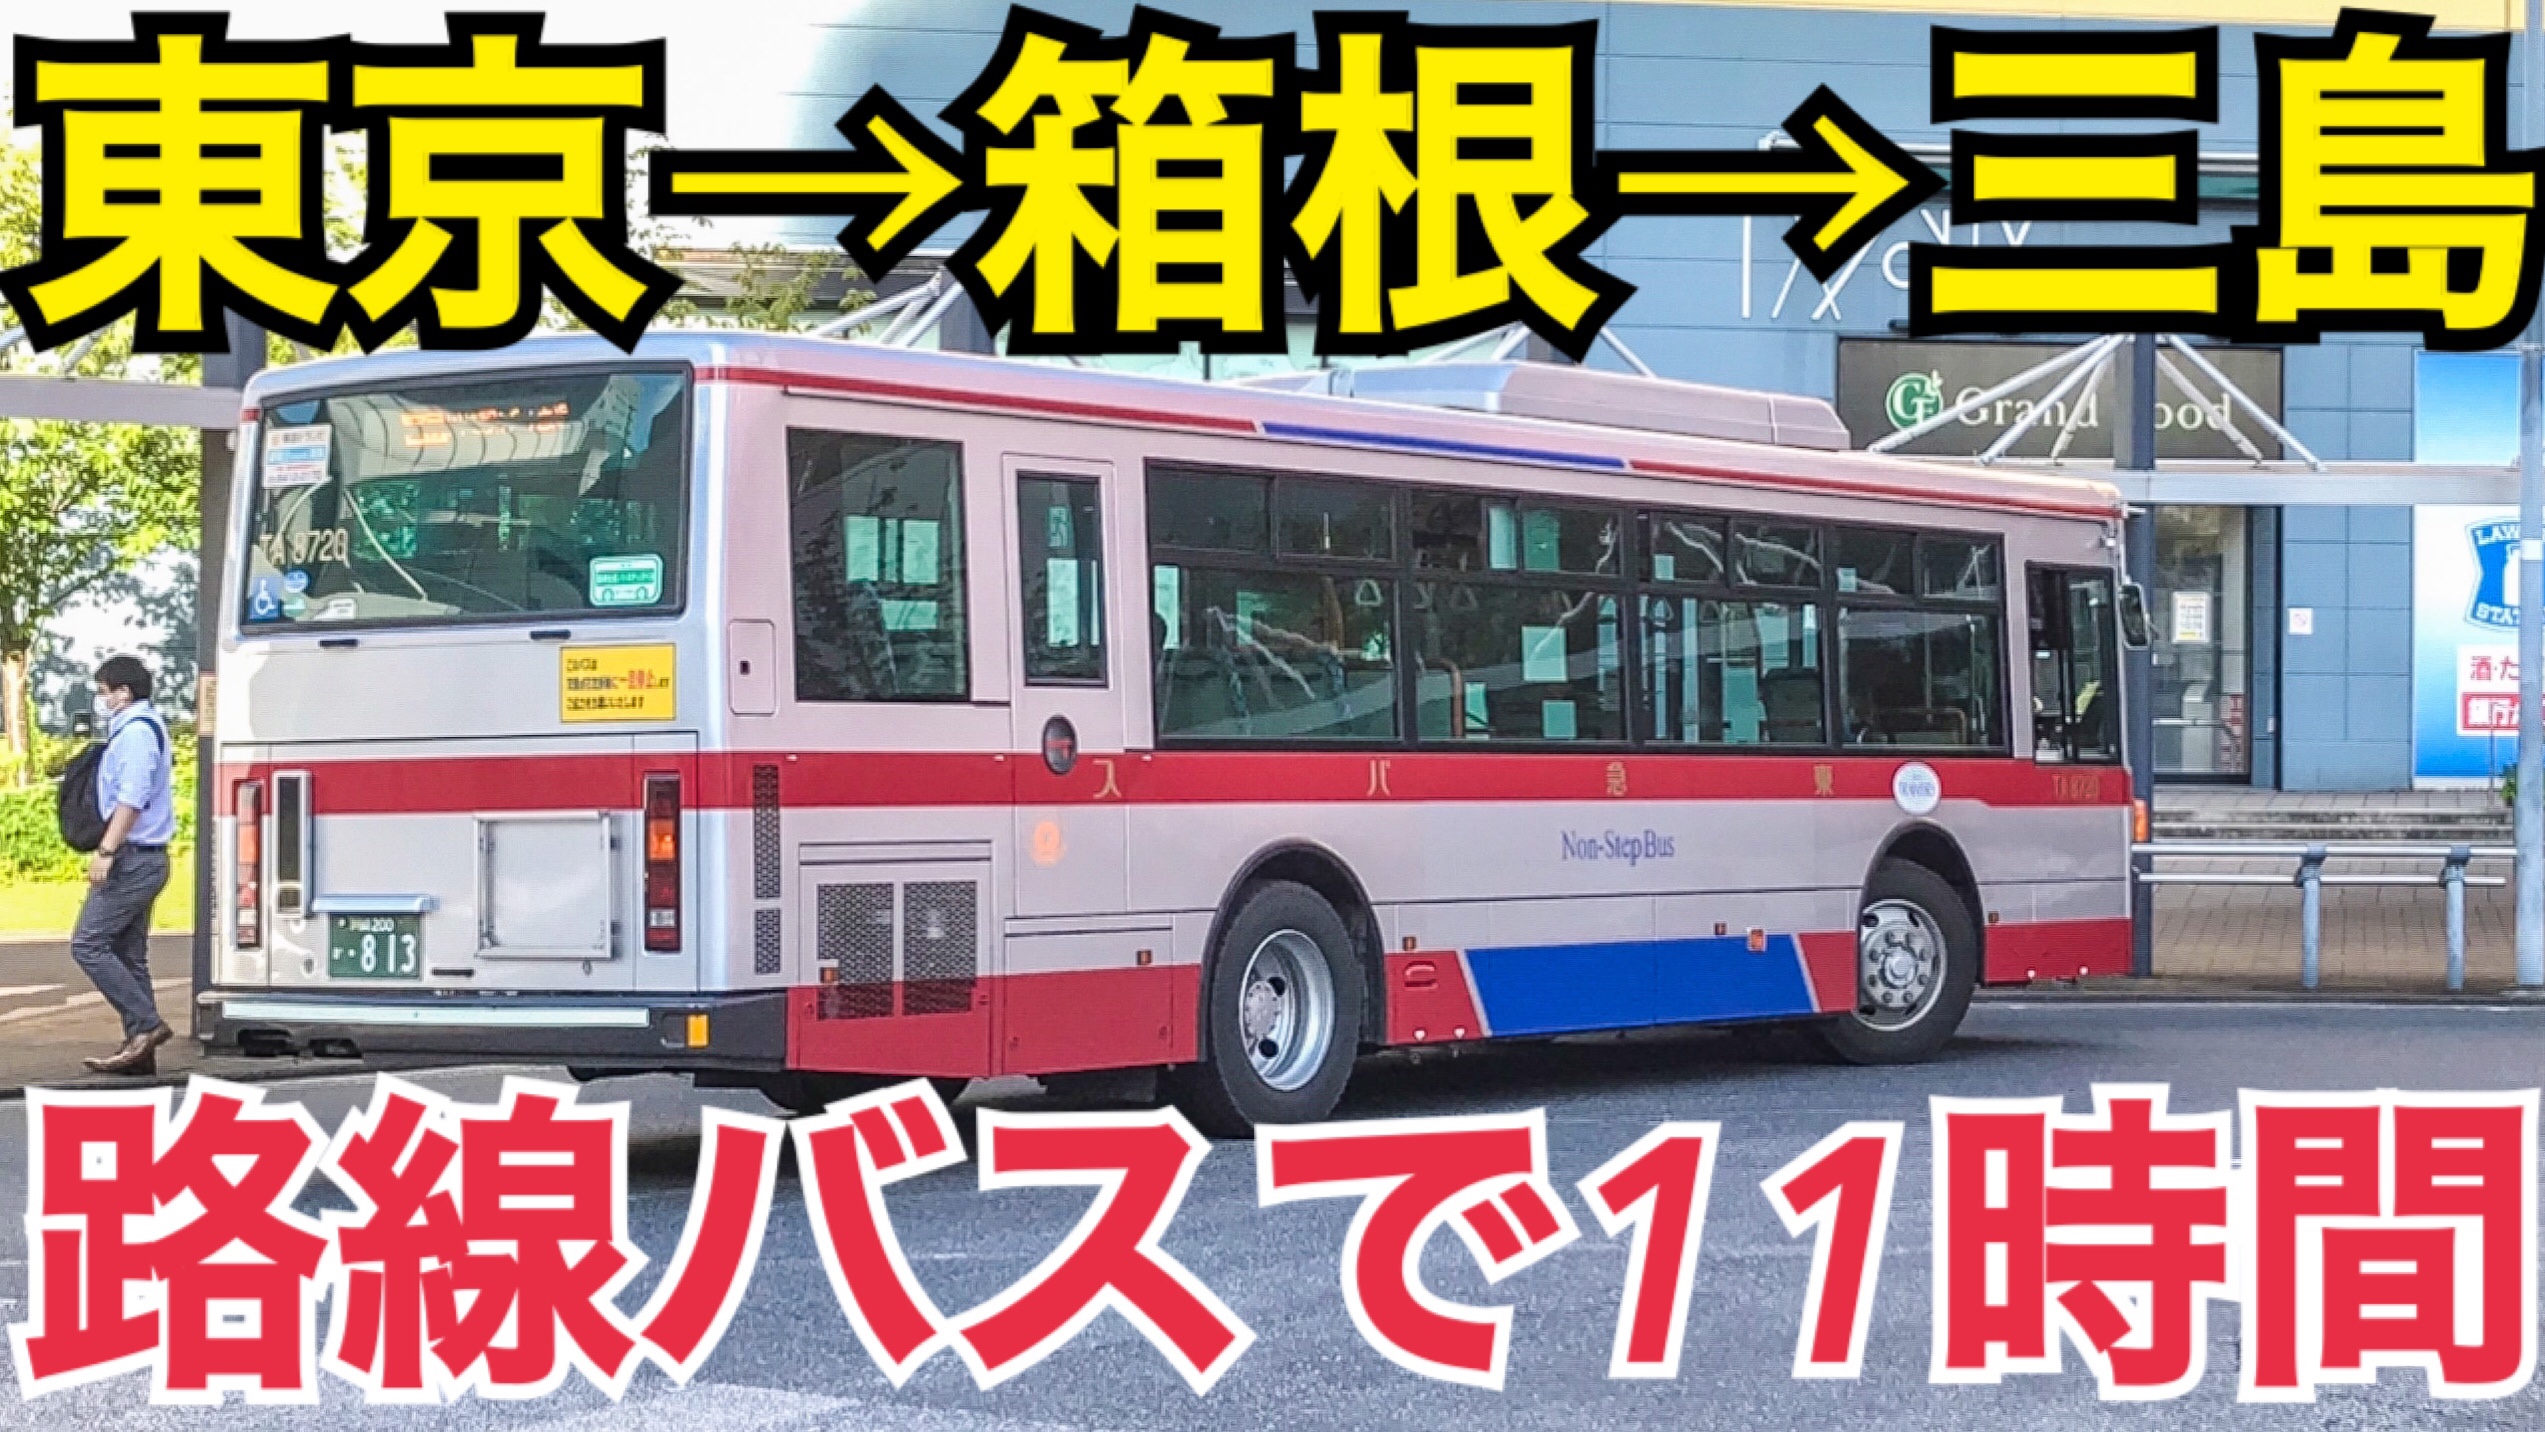 路線バスで11時間！東京から箱根・三島まで路線バス乗継の旅！ひたすら乗り継いで、長距離移動はできるの？【東京静岡路線バスの旅】